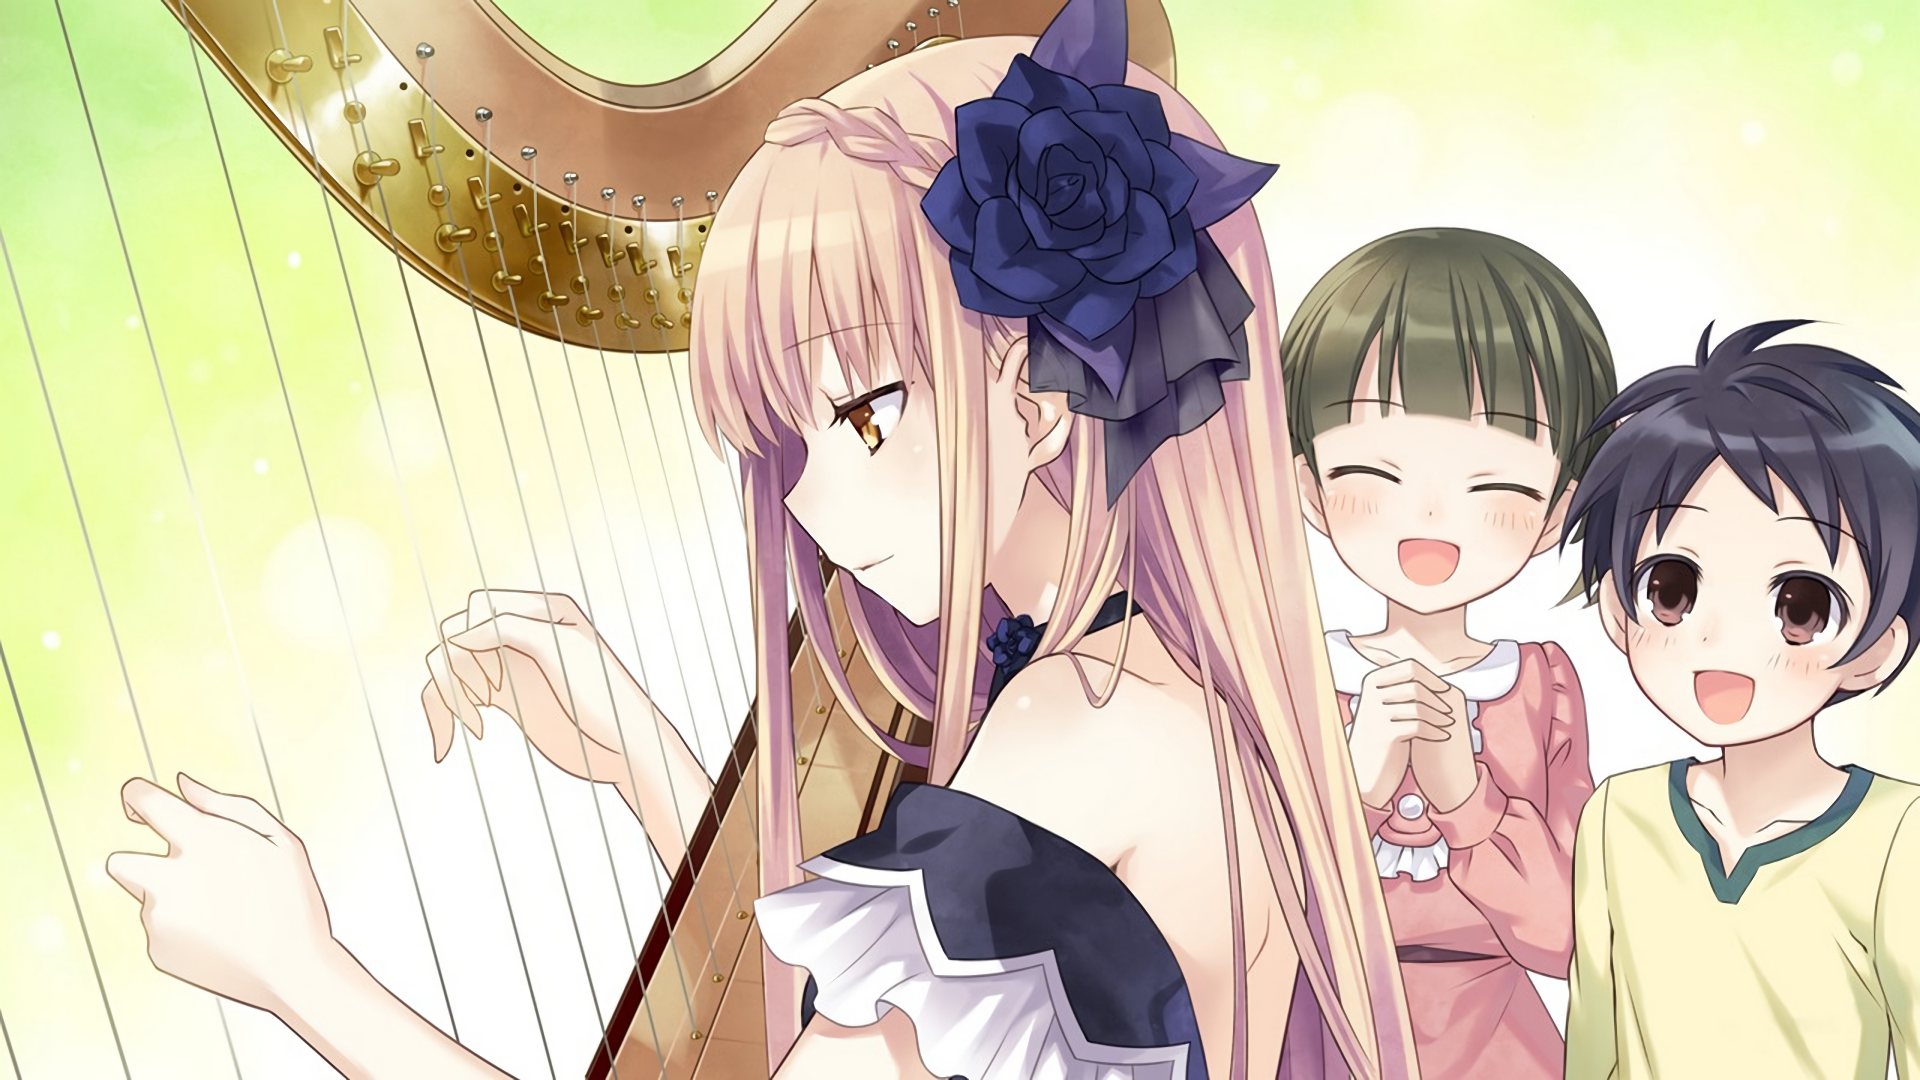 Marianna playing the harp by Tsunako